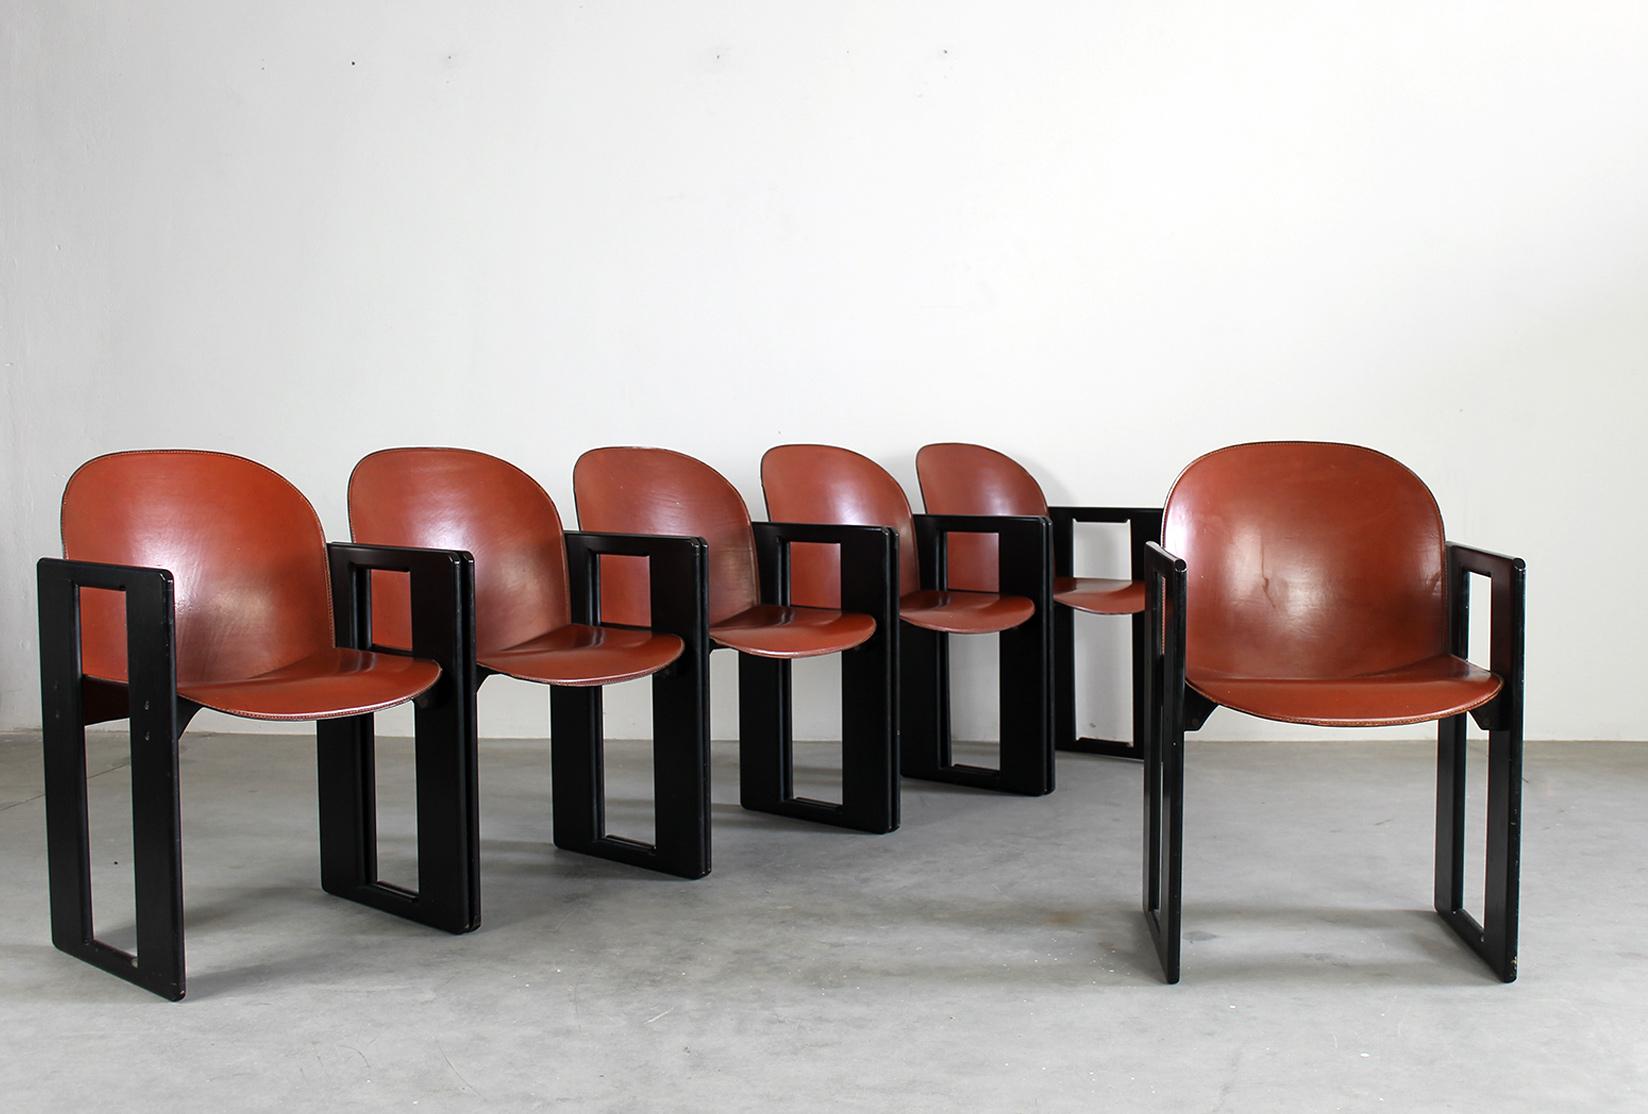 Ensemble de six chaises Dialogo avec structure en bois laqué noir, assise et dossier en cuir et détails métalliques. 
Conçue par Tobia & Afra Scarpa et produite par B&B Italia dans les années 1970.

La chaise Dialogo présente une structure